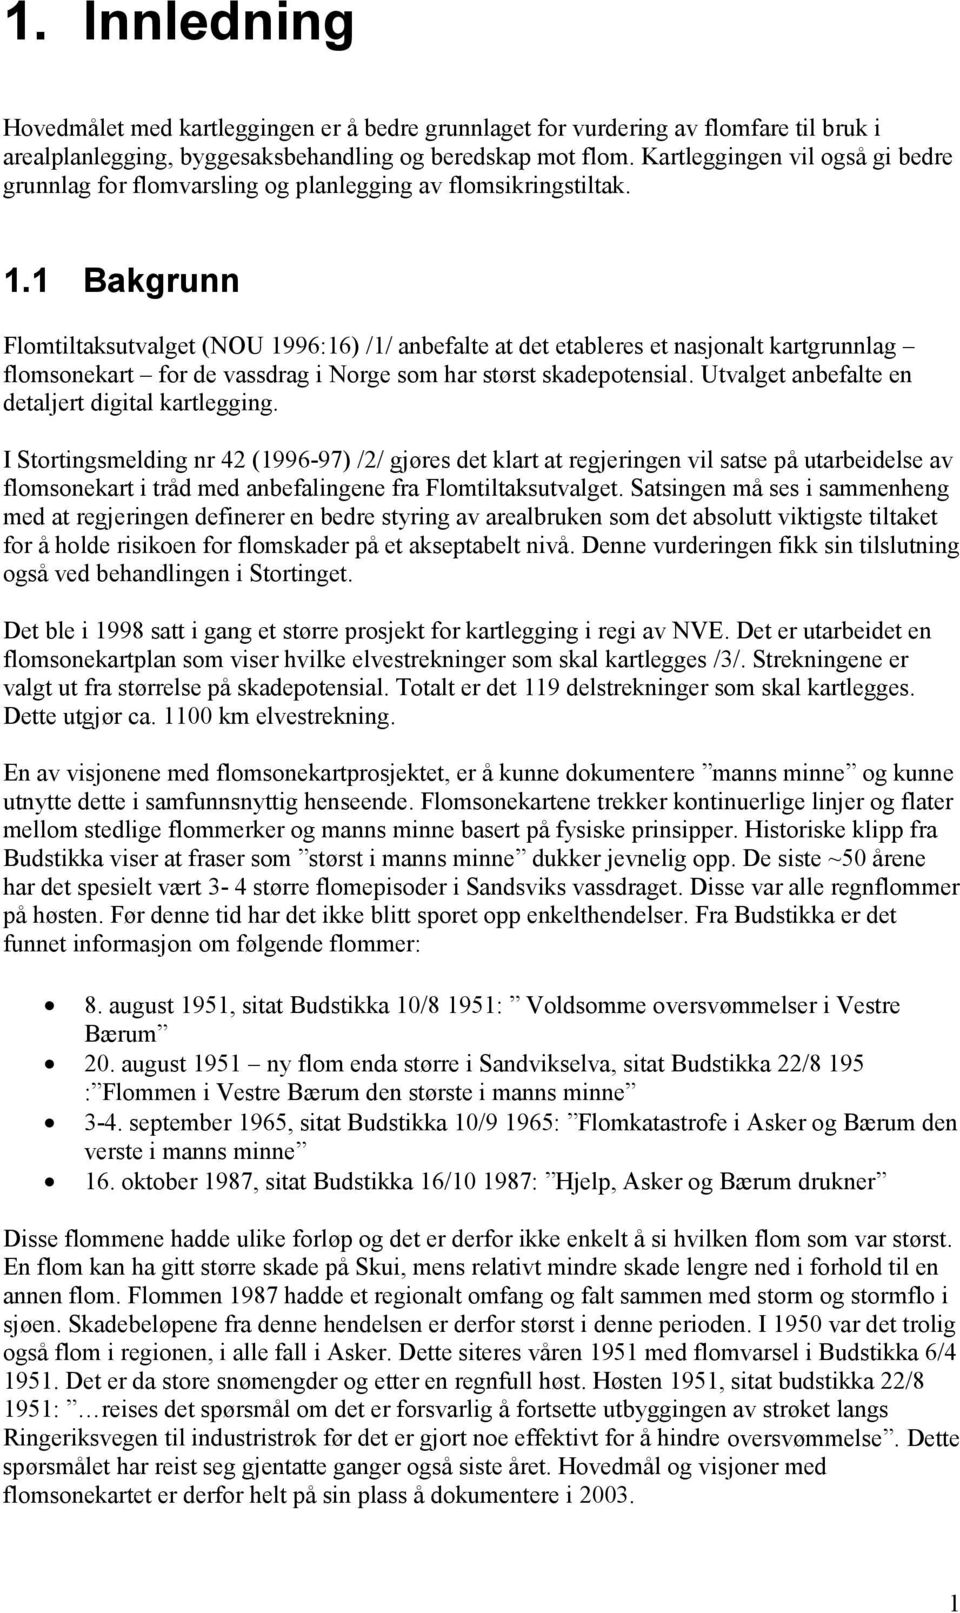 1 Bakgrunn Flomtiltaksutvalget (NOU 1996:16) /1/ anbefalte at det etableres et nasjonalt kartgrunnlag flomsonekart for de vassdrag i Norge som har størst skadepotensial.